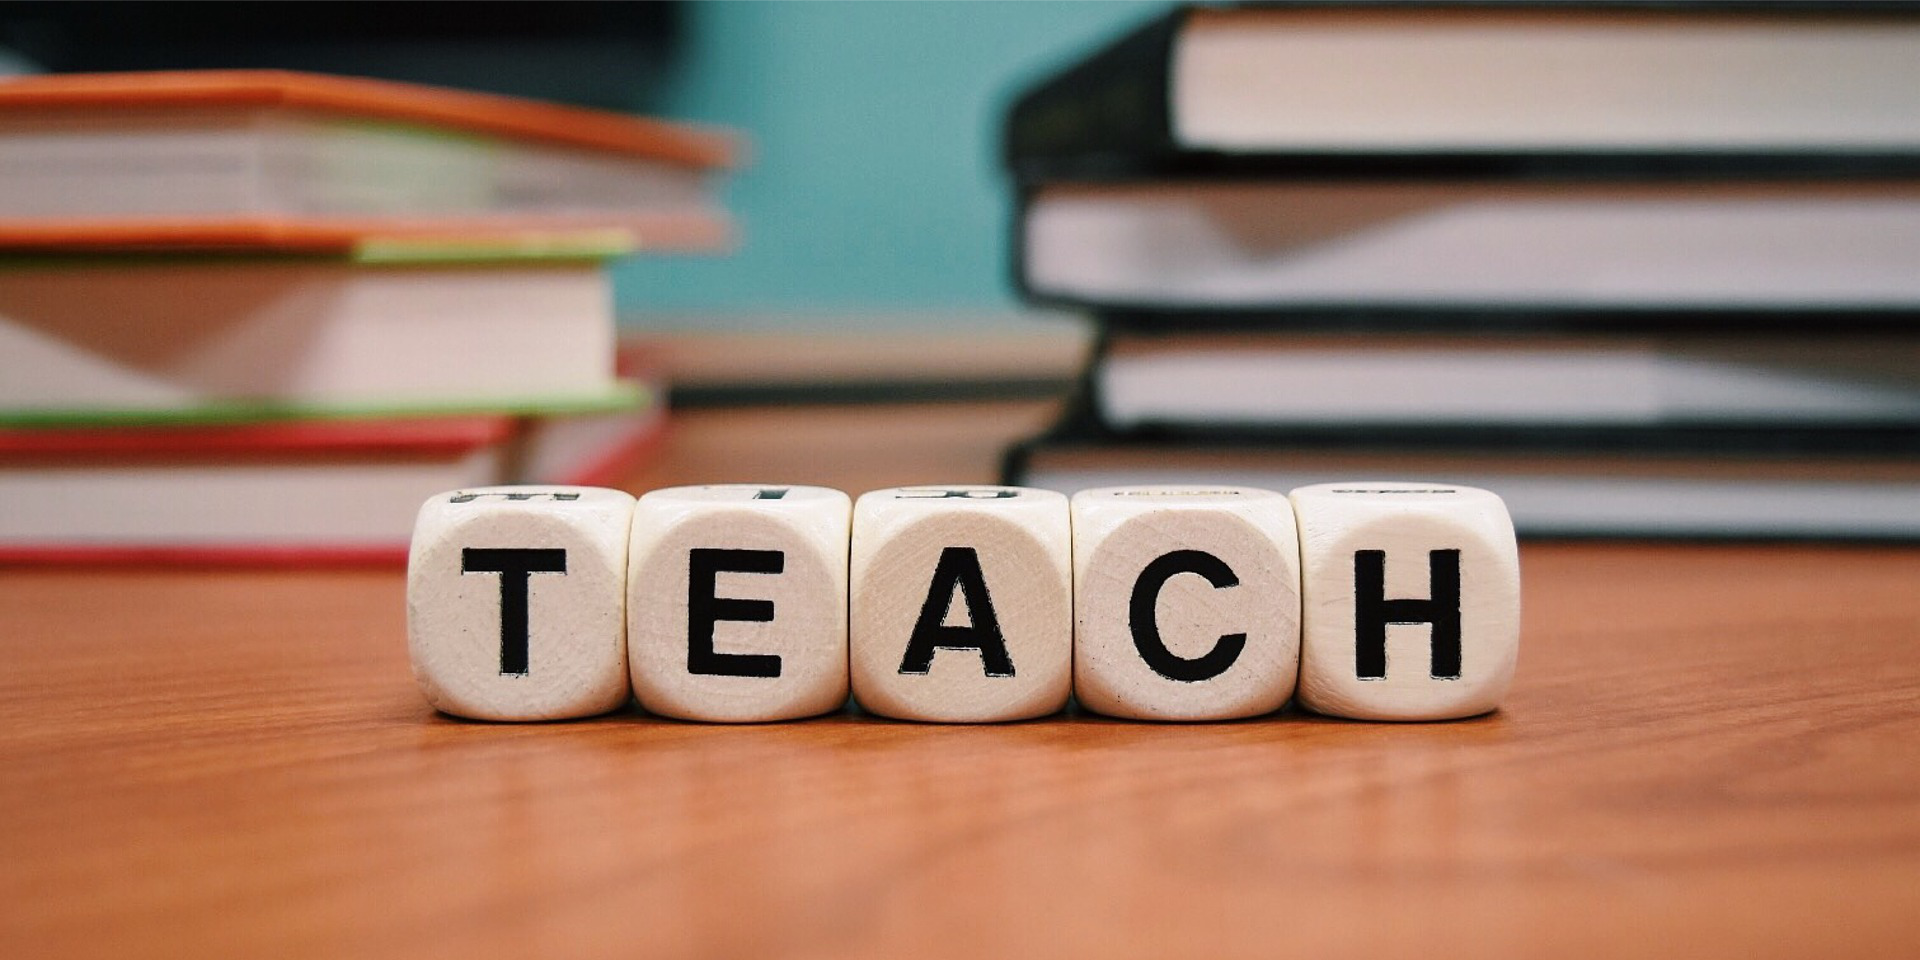 5 Würfel, die das Wort "Teach" zeigen